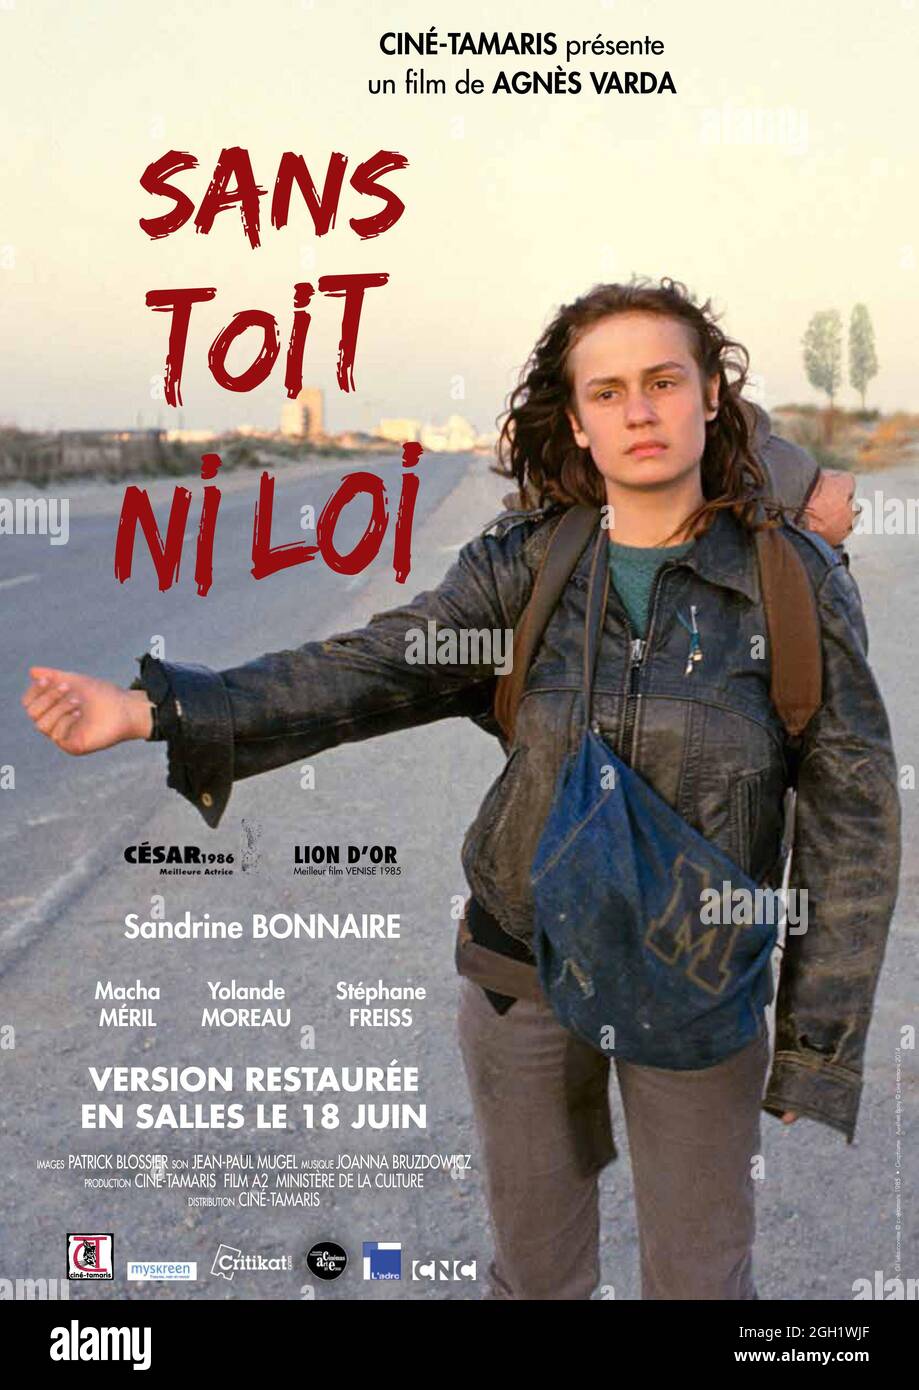 SANDRINE BONNAIRE in VAGABOND (1985) -Original title: SANS TOIT NI LOI-,  directed by AGNES VARDA. Credit: Films A2 / Ciné Tamaris / Album Stock  Photo - Alamy